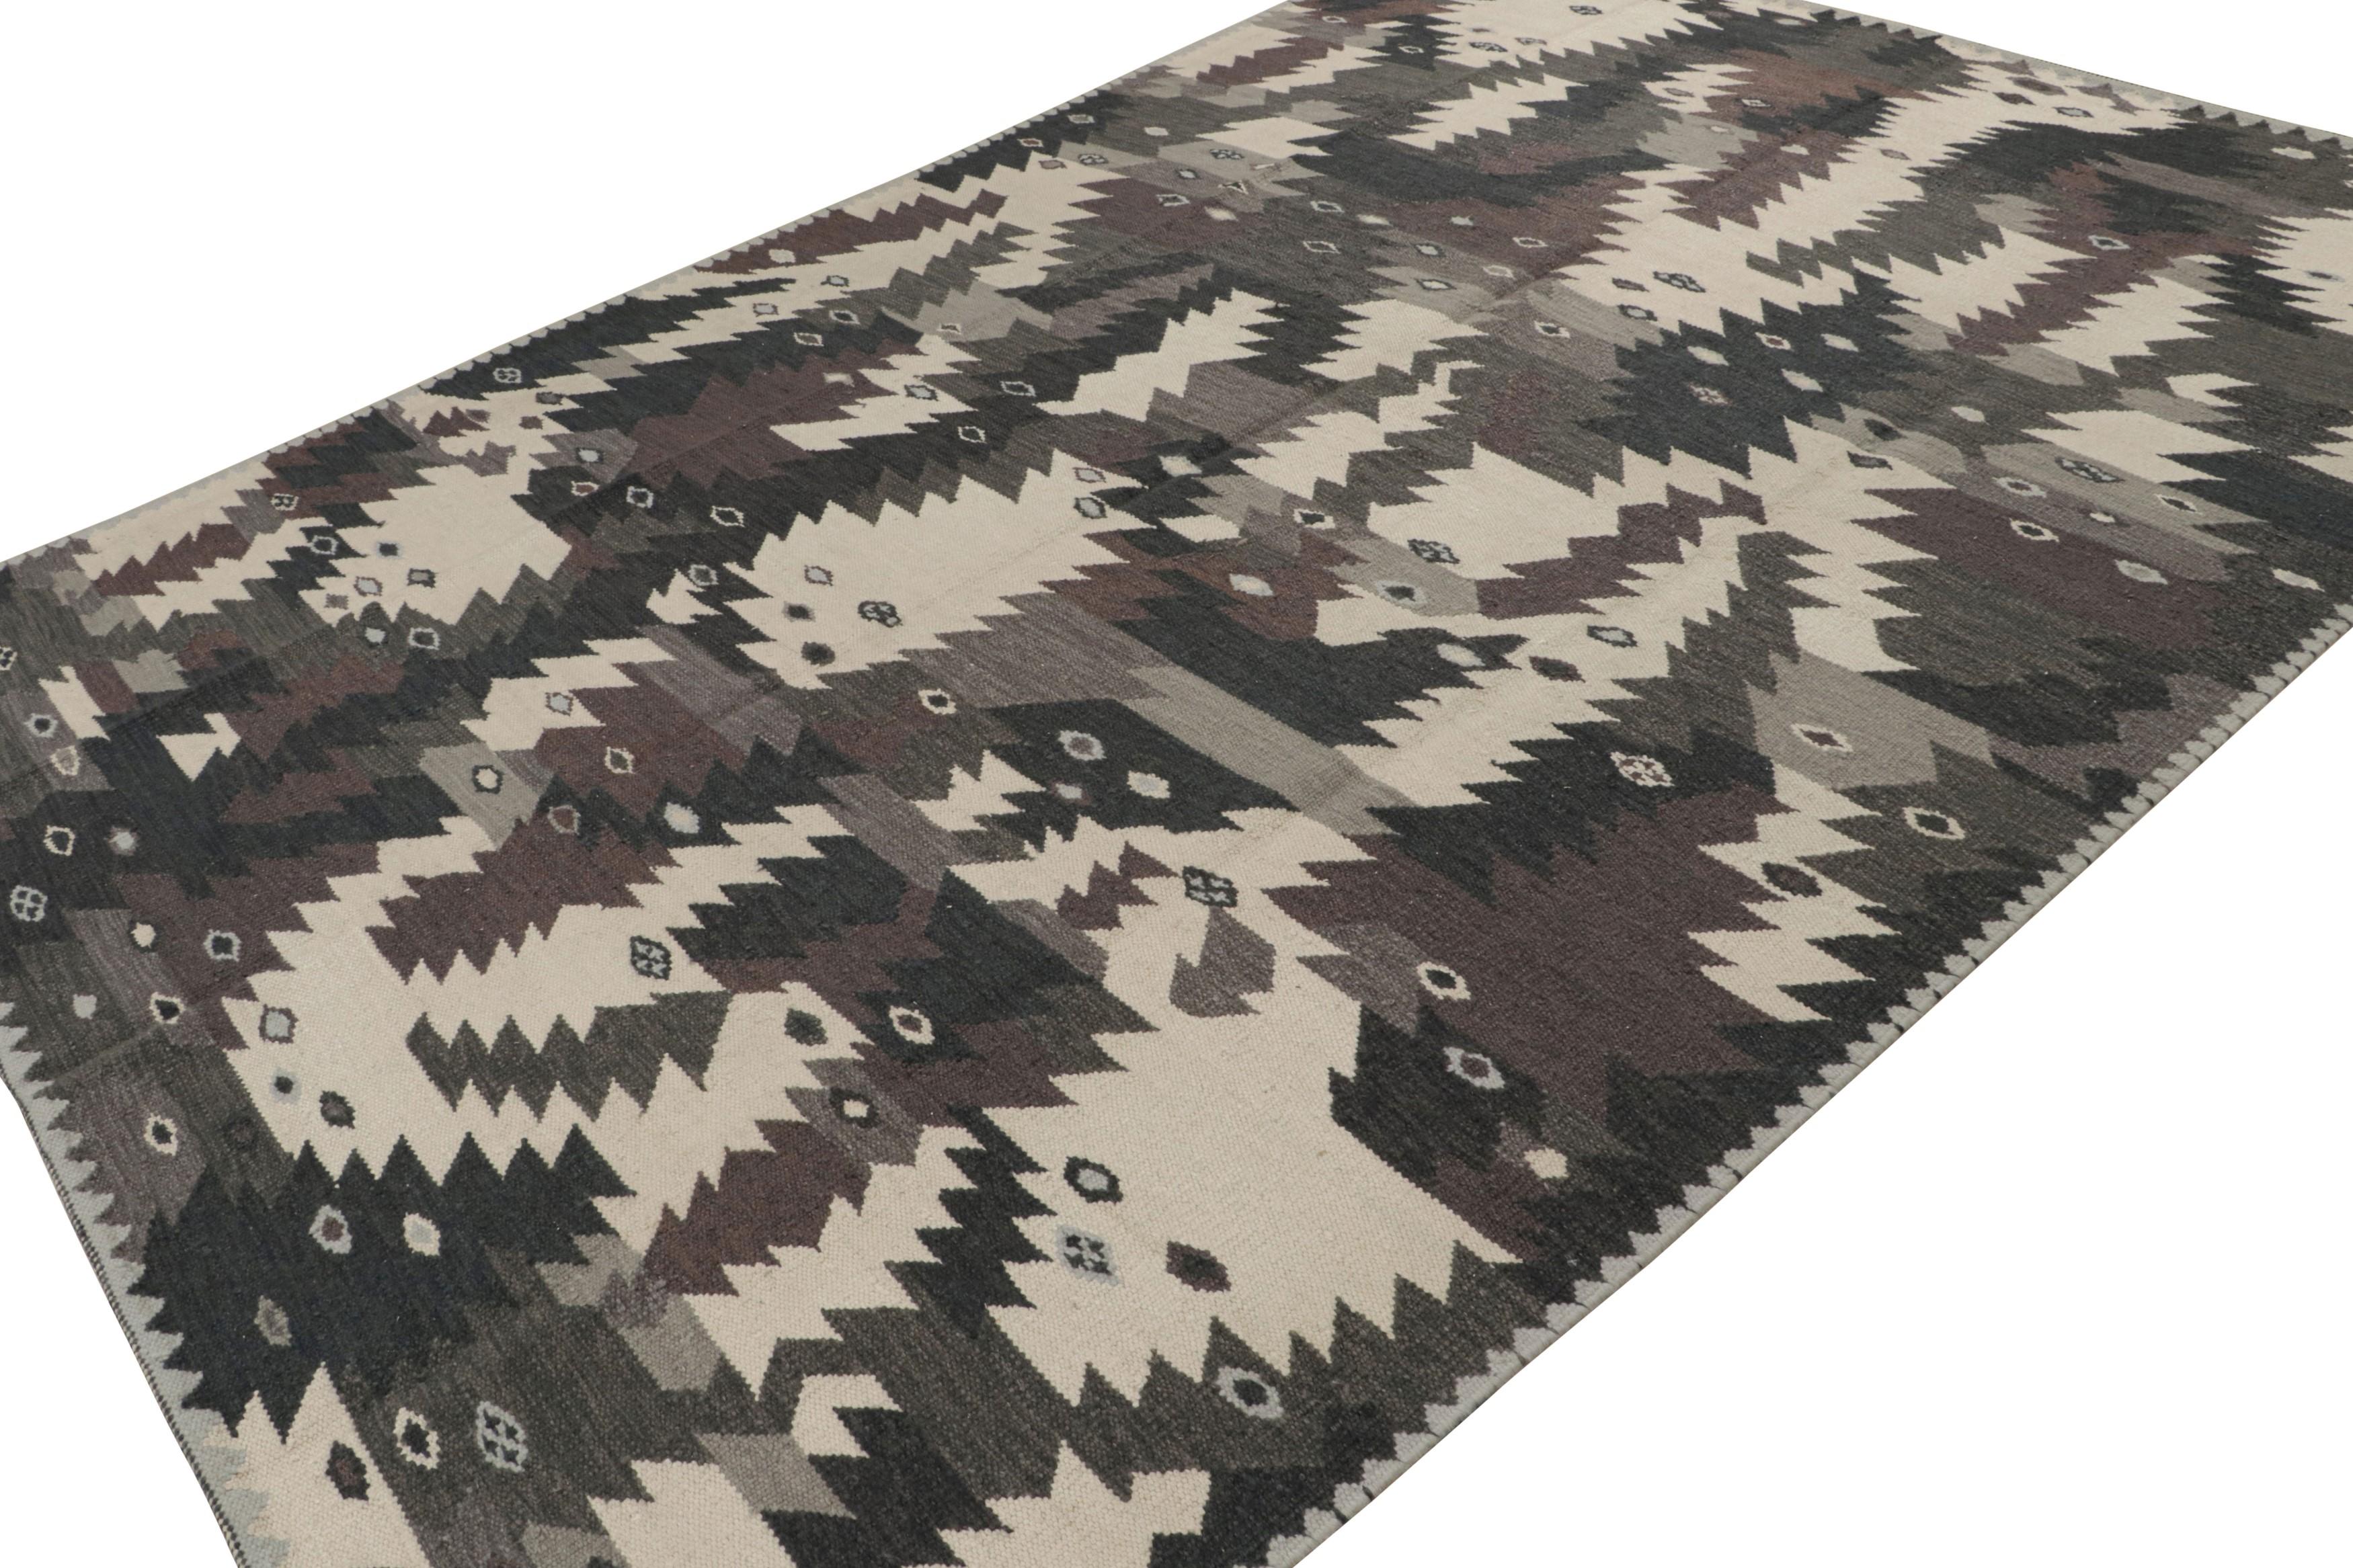 Dieser schwedische Teppich im Format 9x12 gehört zu den Flachgeweben der skandinavischen Teppichkollektion von Rug & Kilim. Das minimalistische Design des handgewebten Wollteppichs ist inspiriert von Rollakhan- und Rya-Teppichen im schwedischen